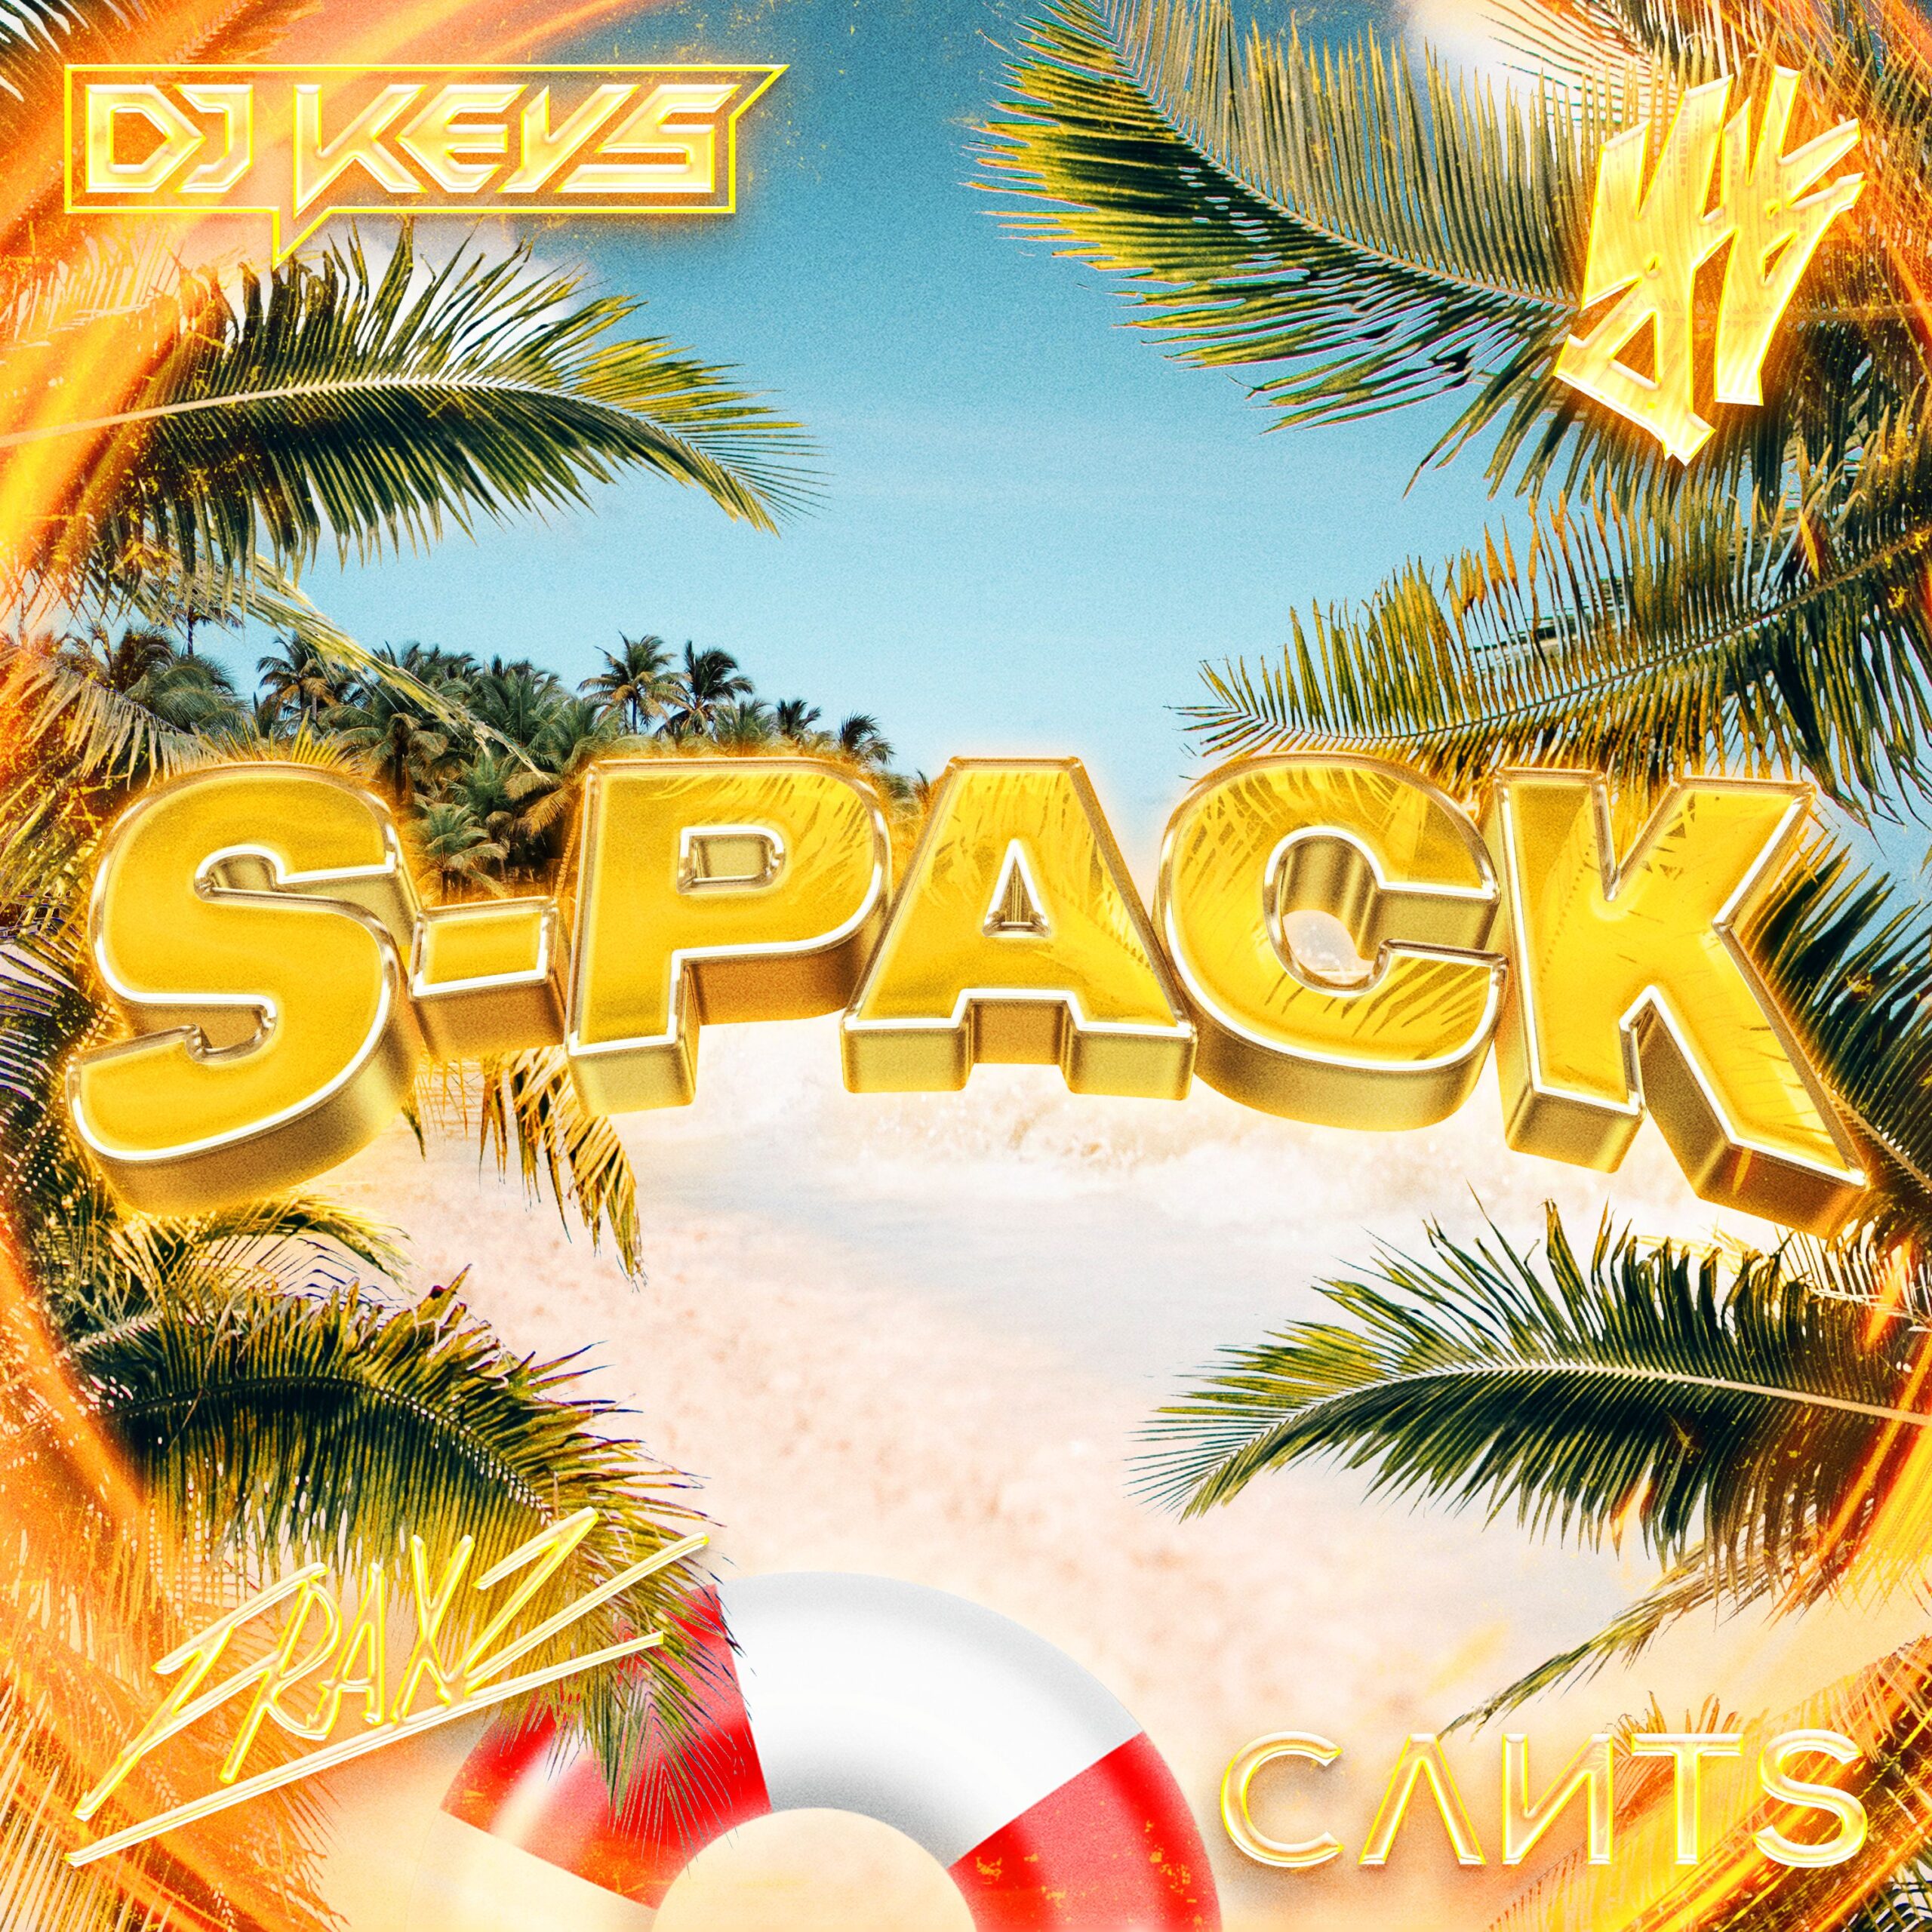 DJ Keys S-Pack Volume 1